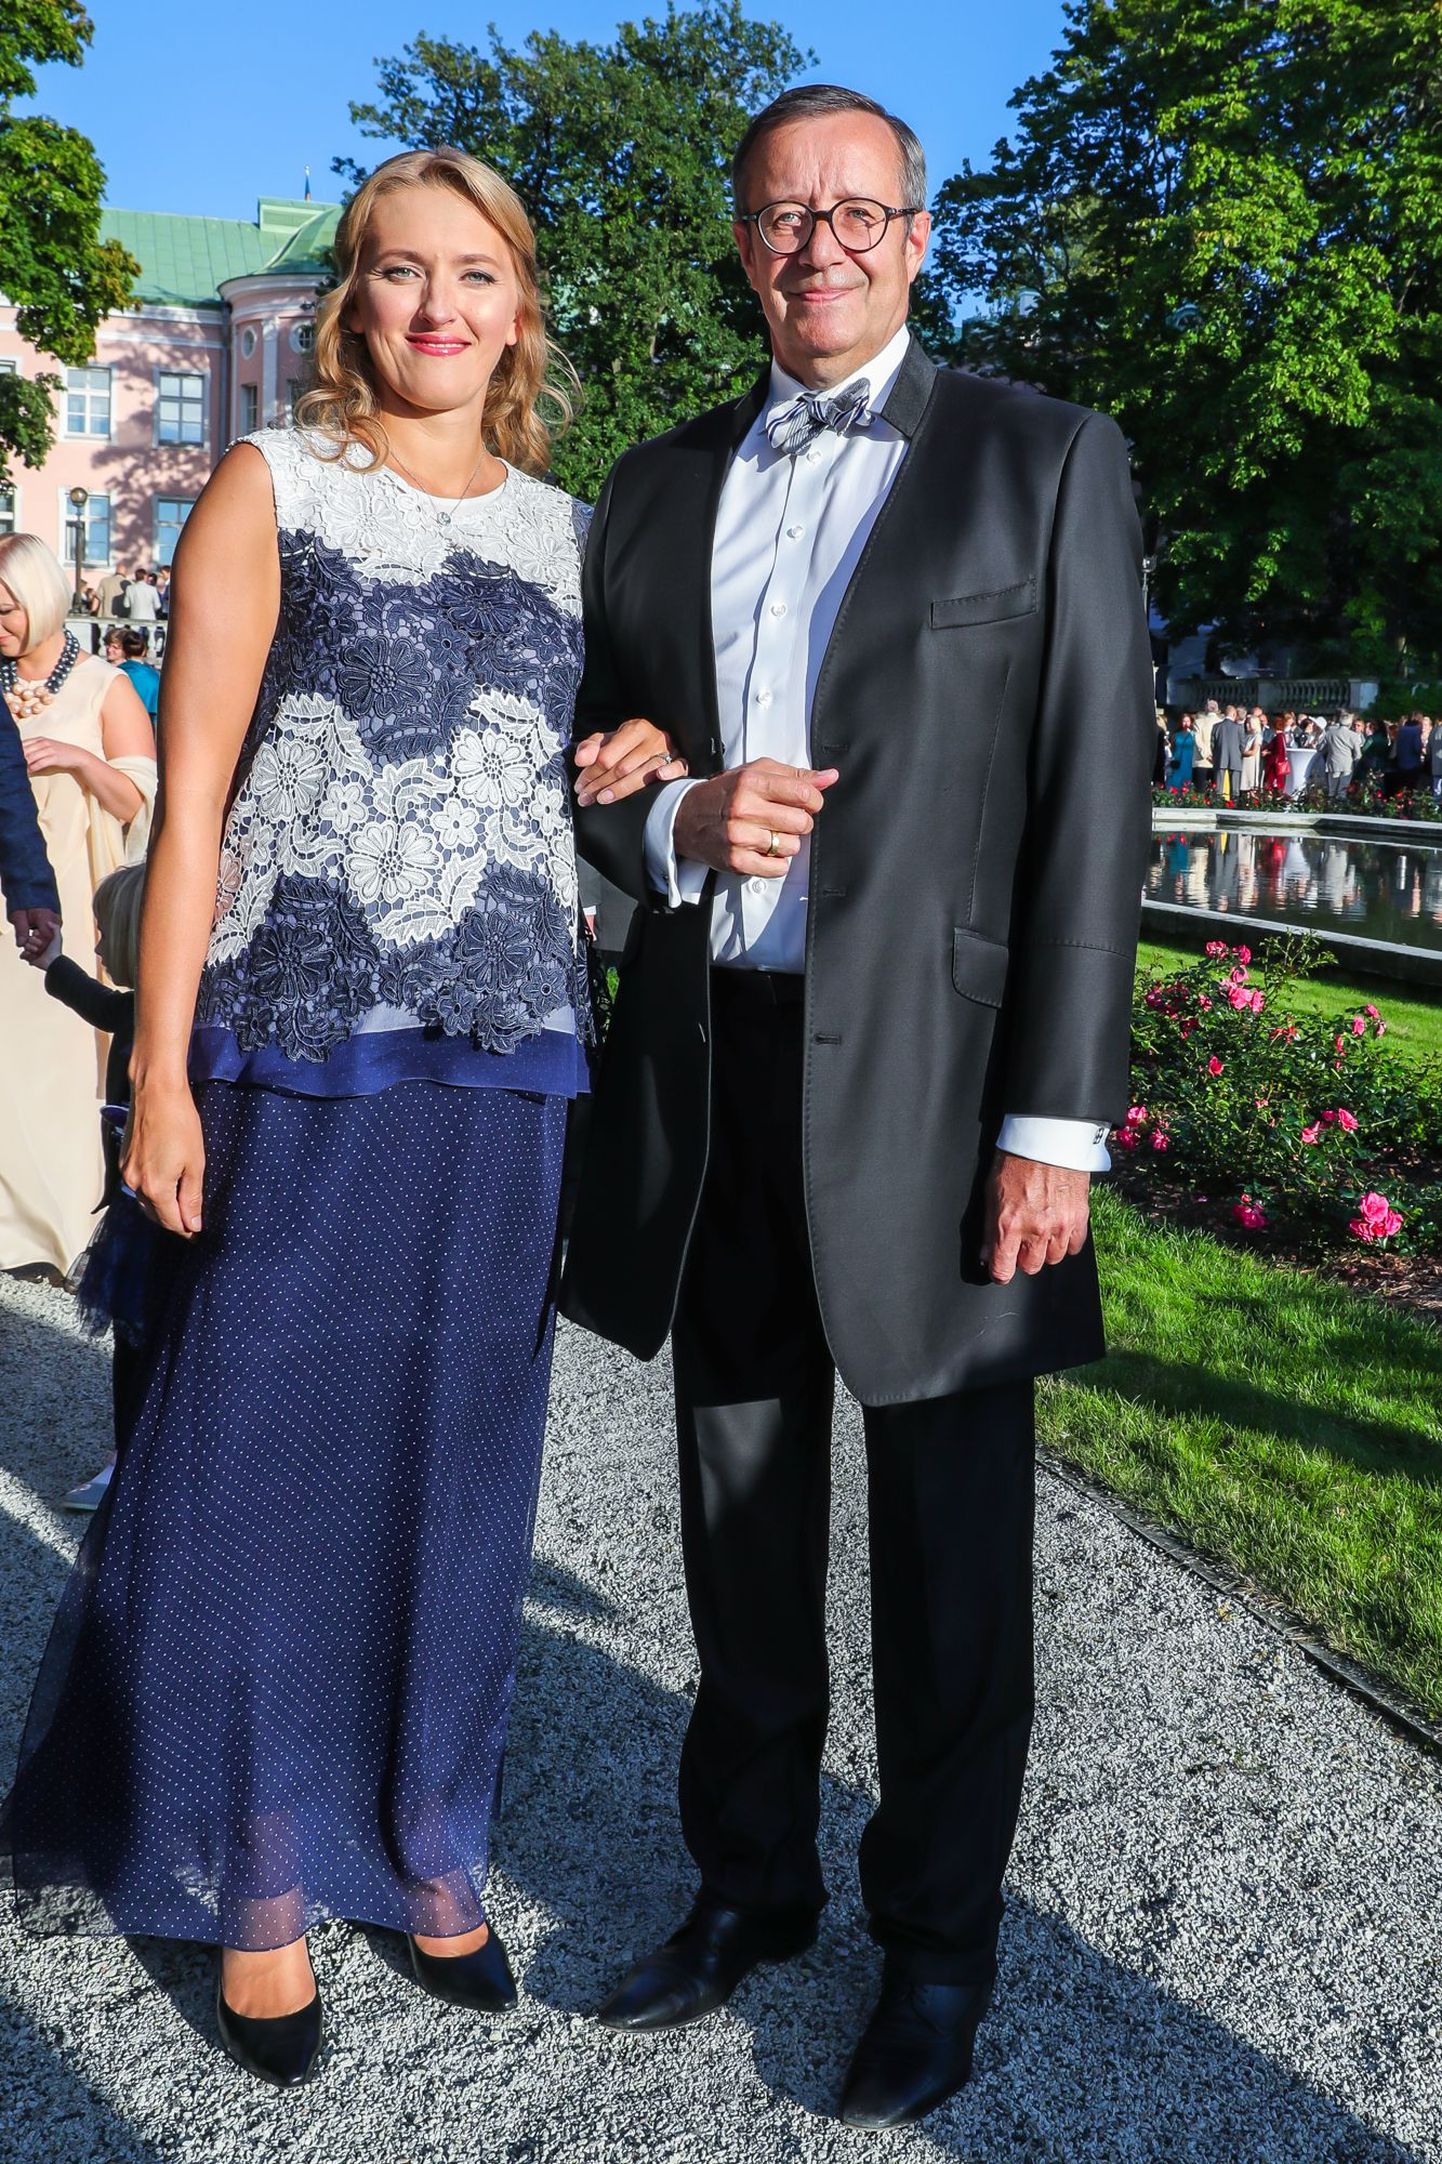 Presidendi vastuvõtt roosiaias.
Ieva Ilves ja Toomas-Hendrik Ilves. Ieva Ilvese pitsiline kleit oli lihtne, kuid stiilne.